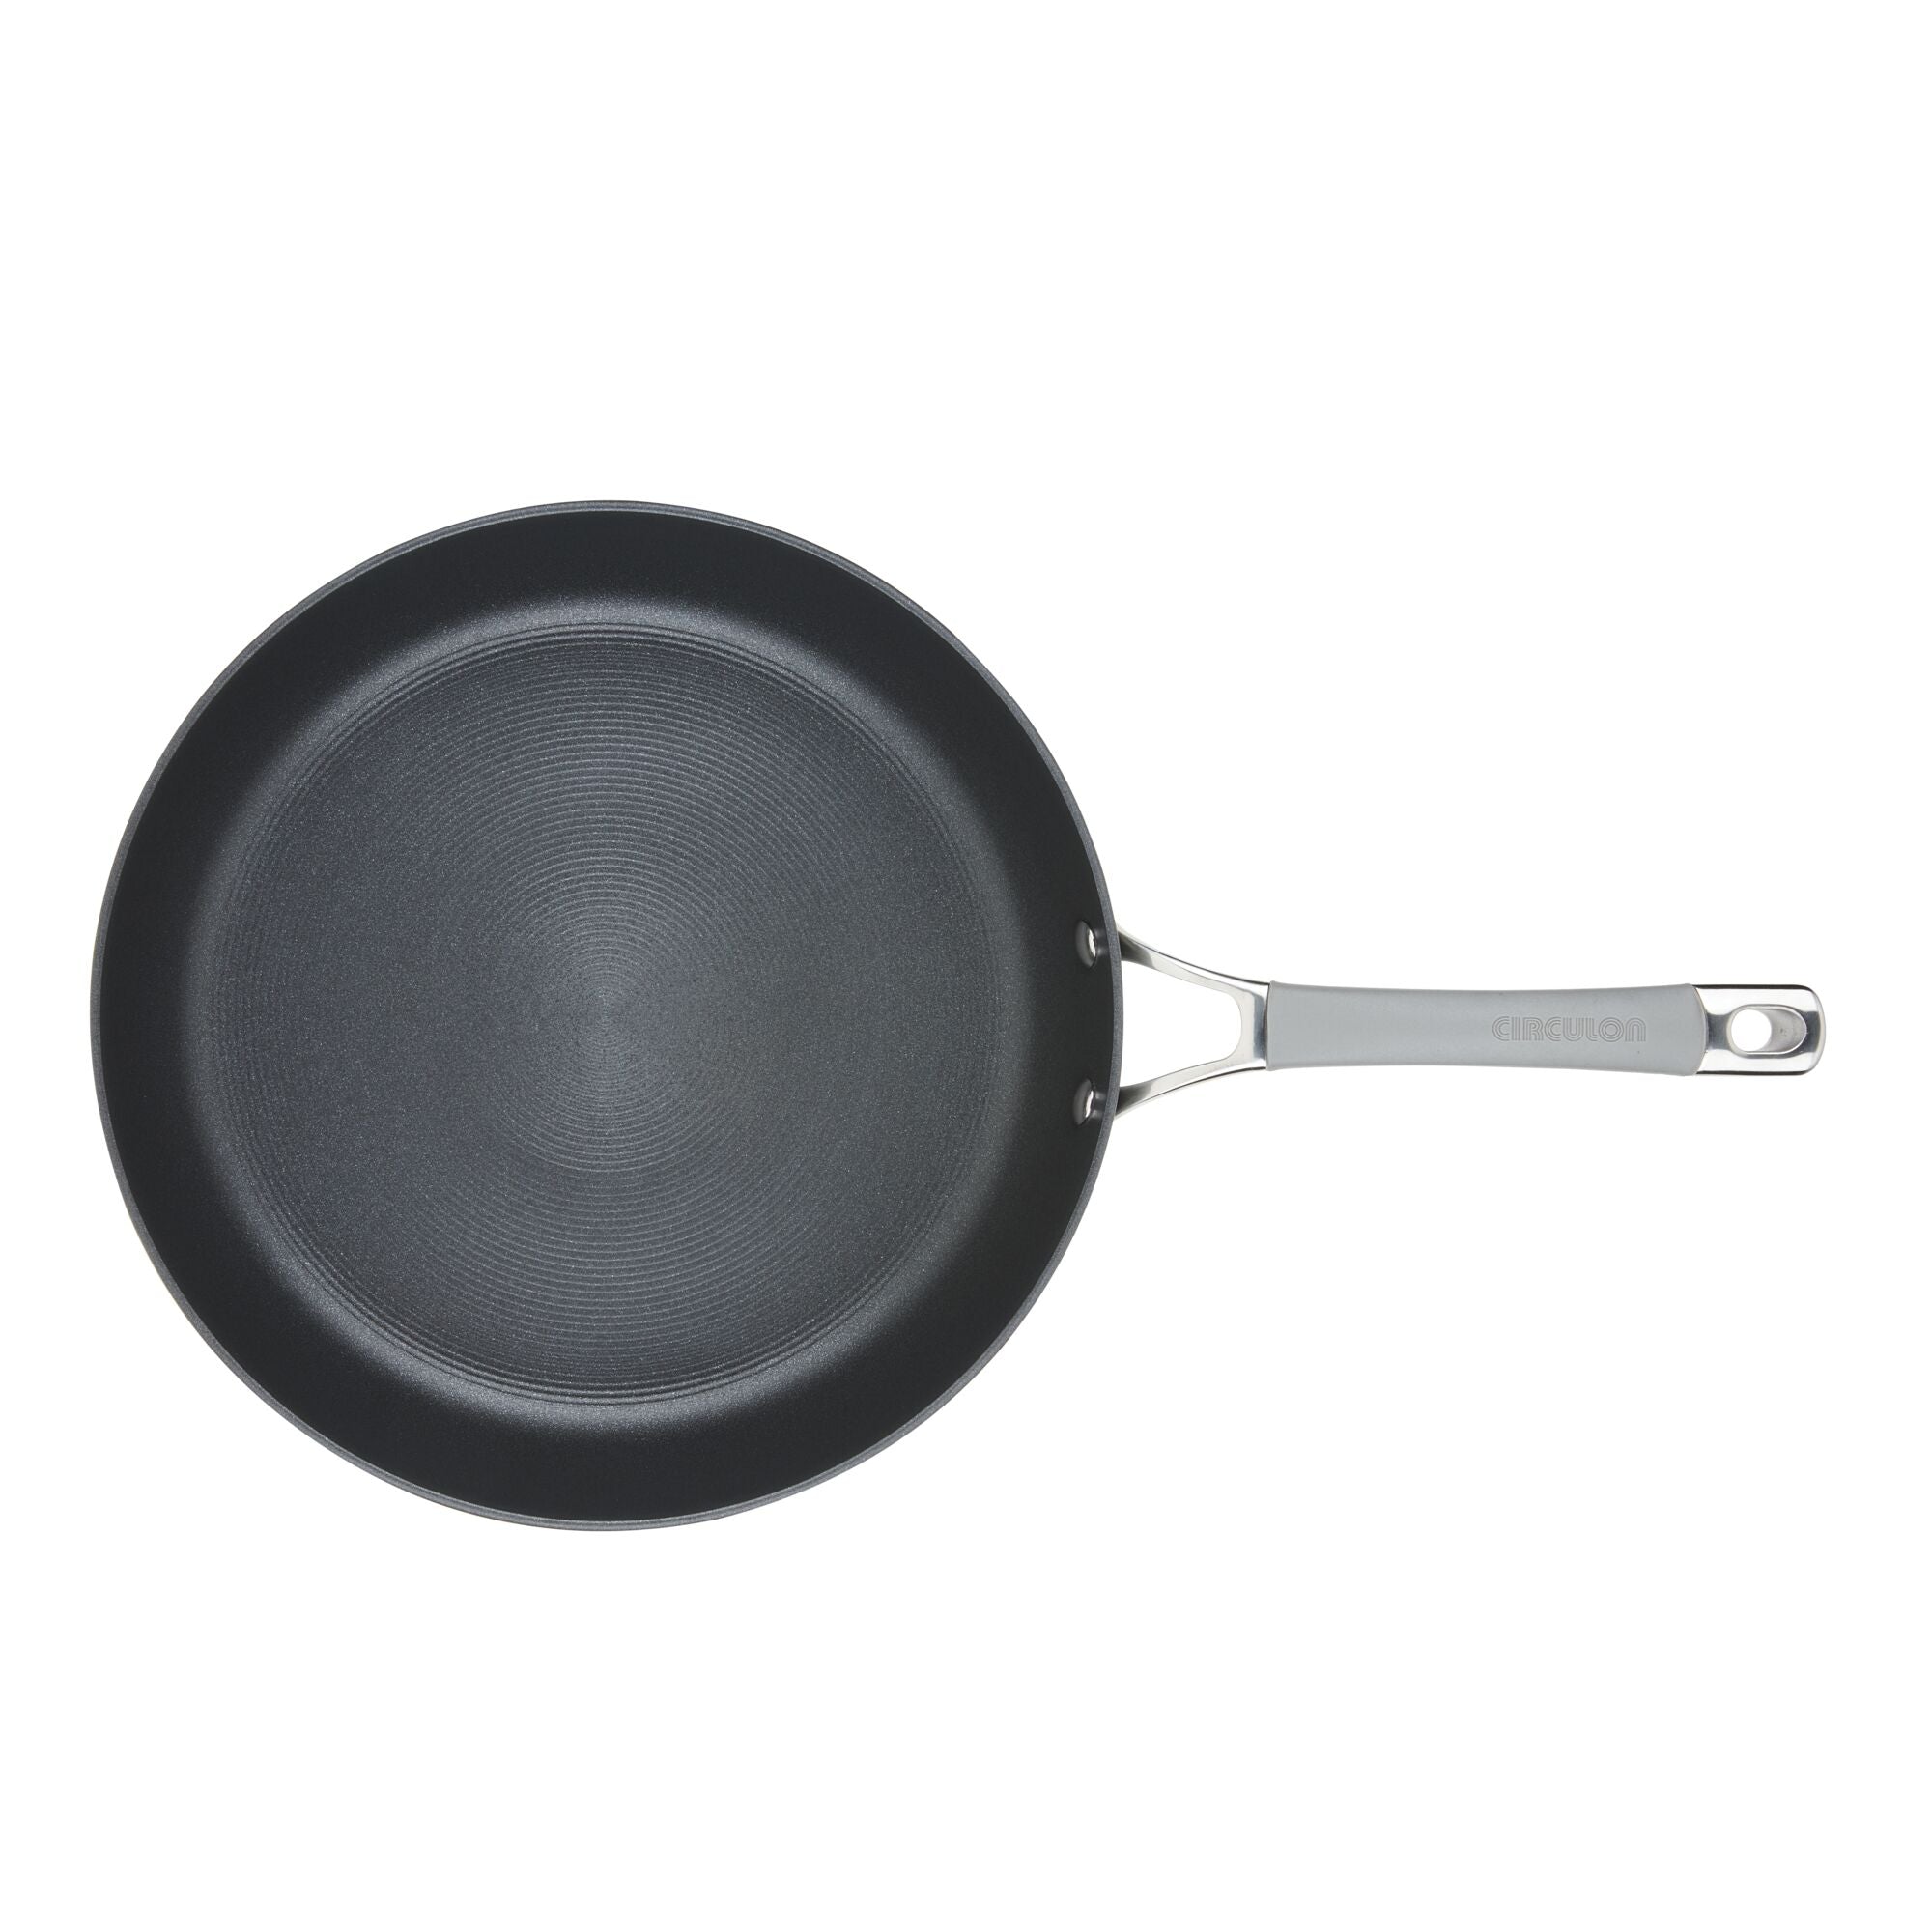 ROCKURWOK Ceramic Nonstick 12in Deep Frying Pan with Lid, 5qt Jumbo Co -  Jolinne